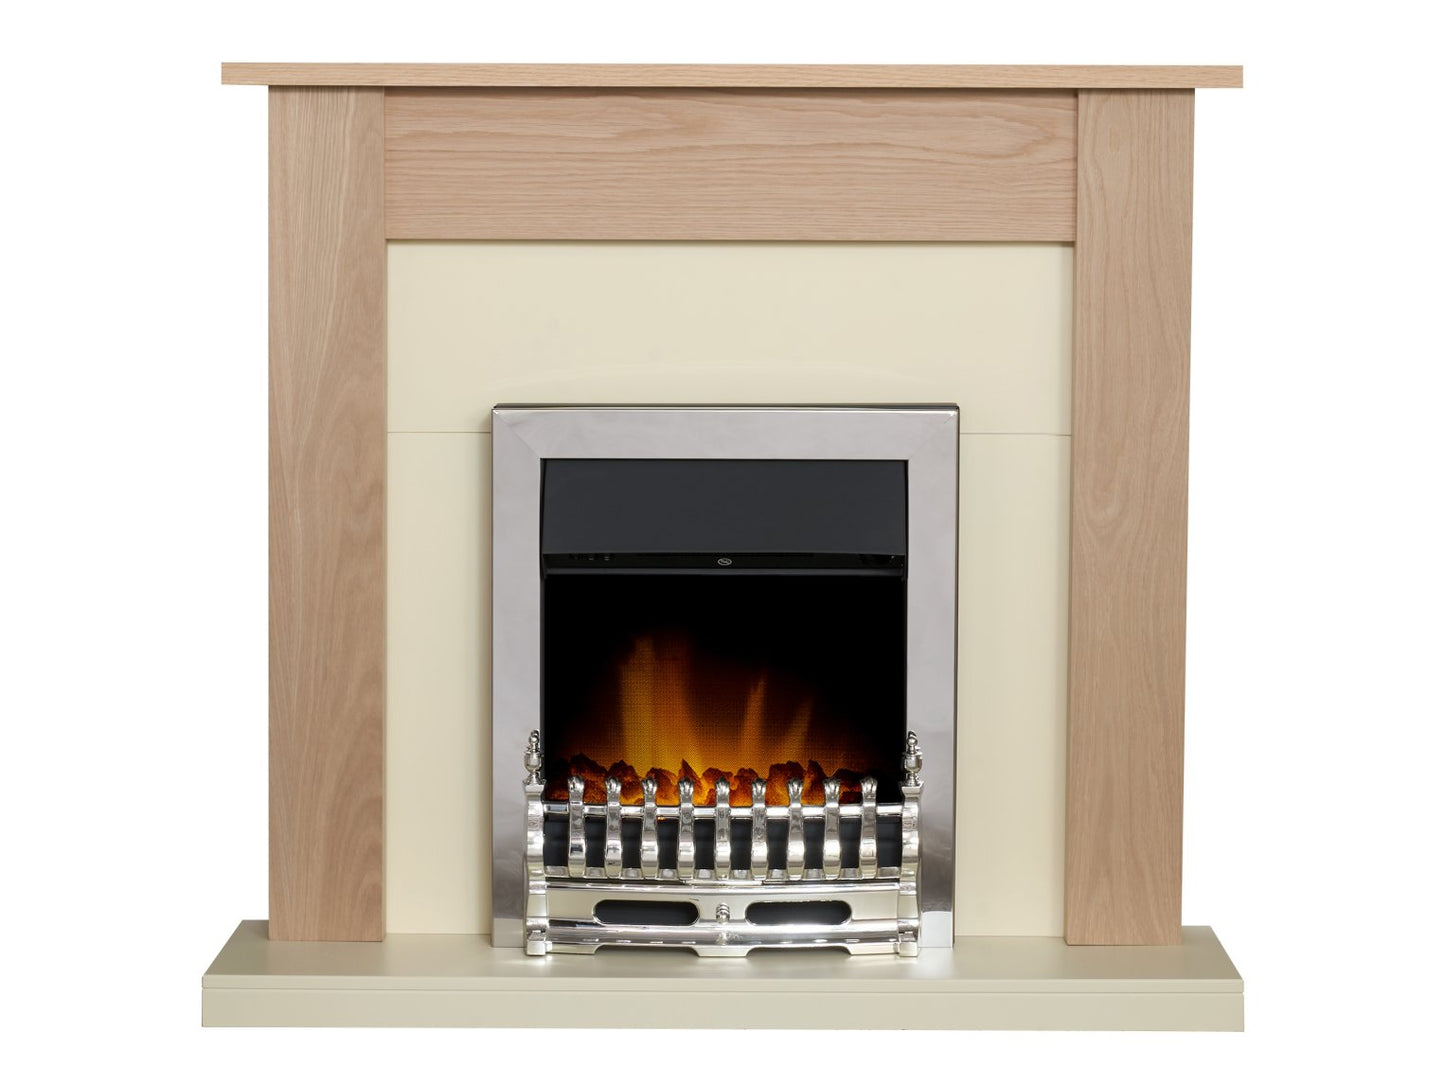 Adam Southwold Fireplace in Oak & Cream with Blenheim Electric Fire in Chrome, 43 Inch